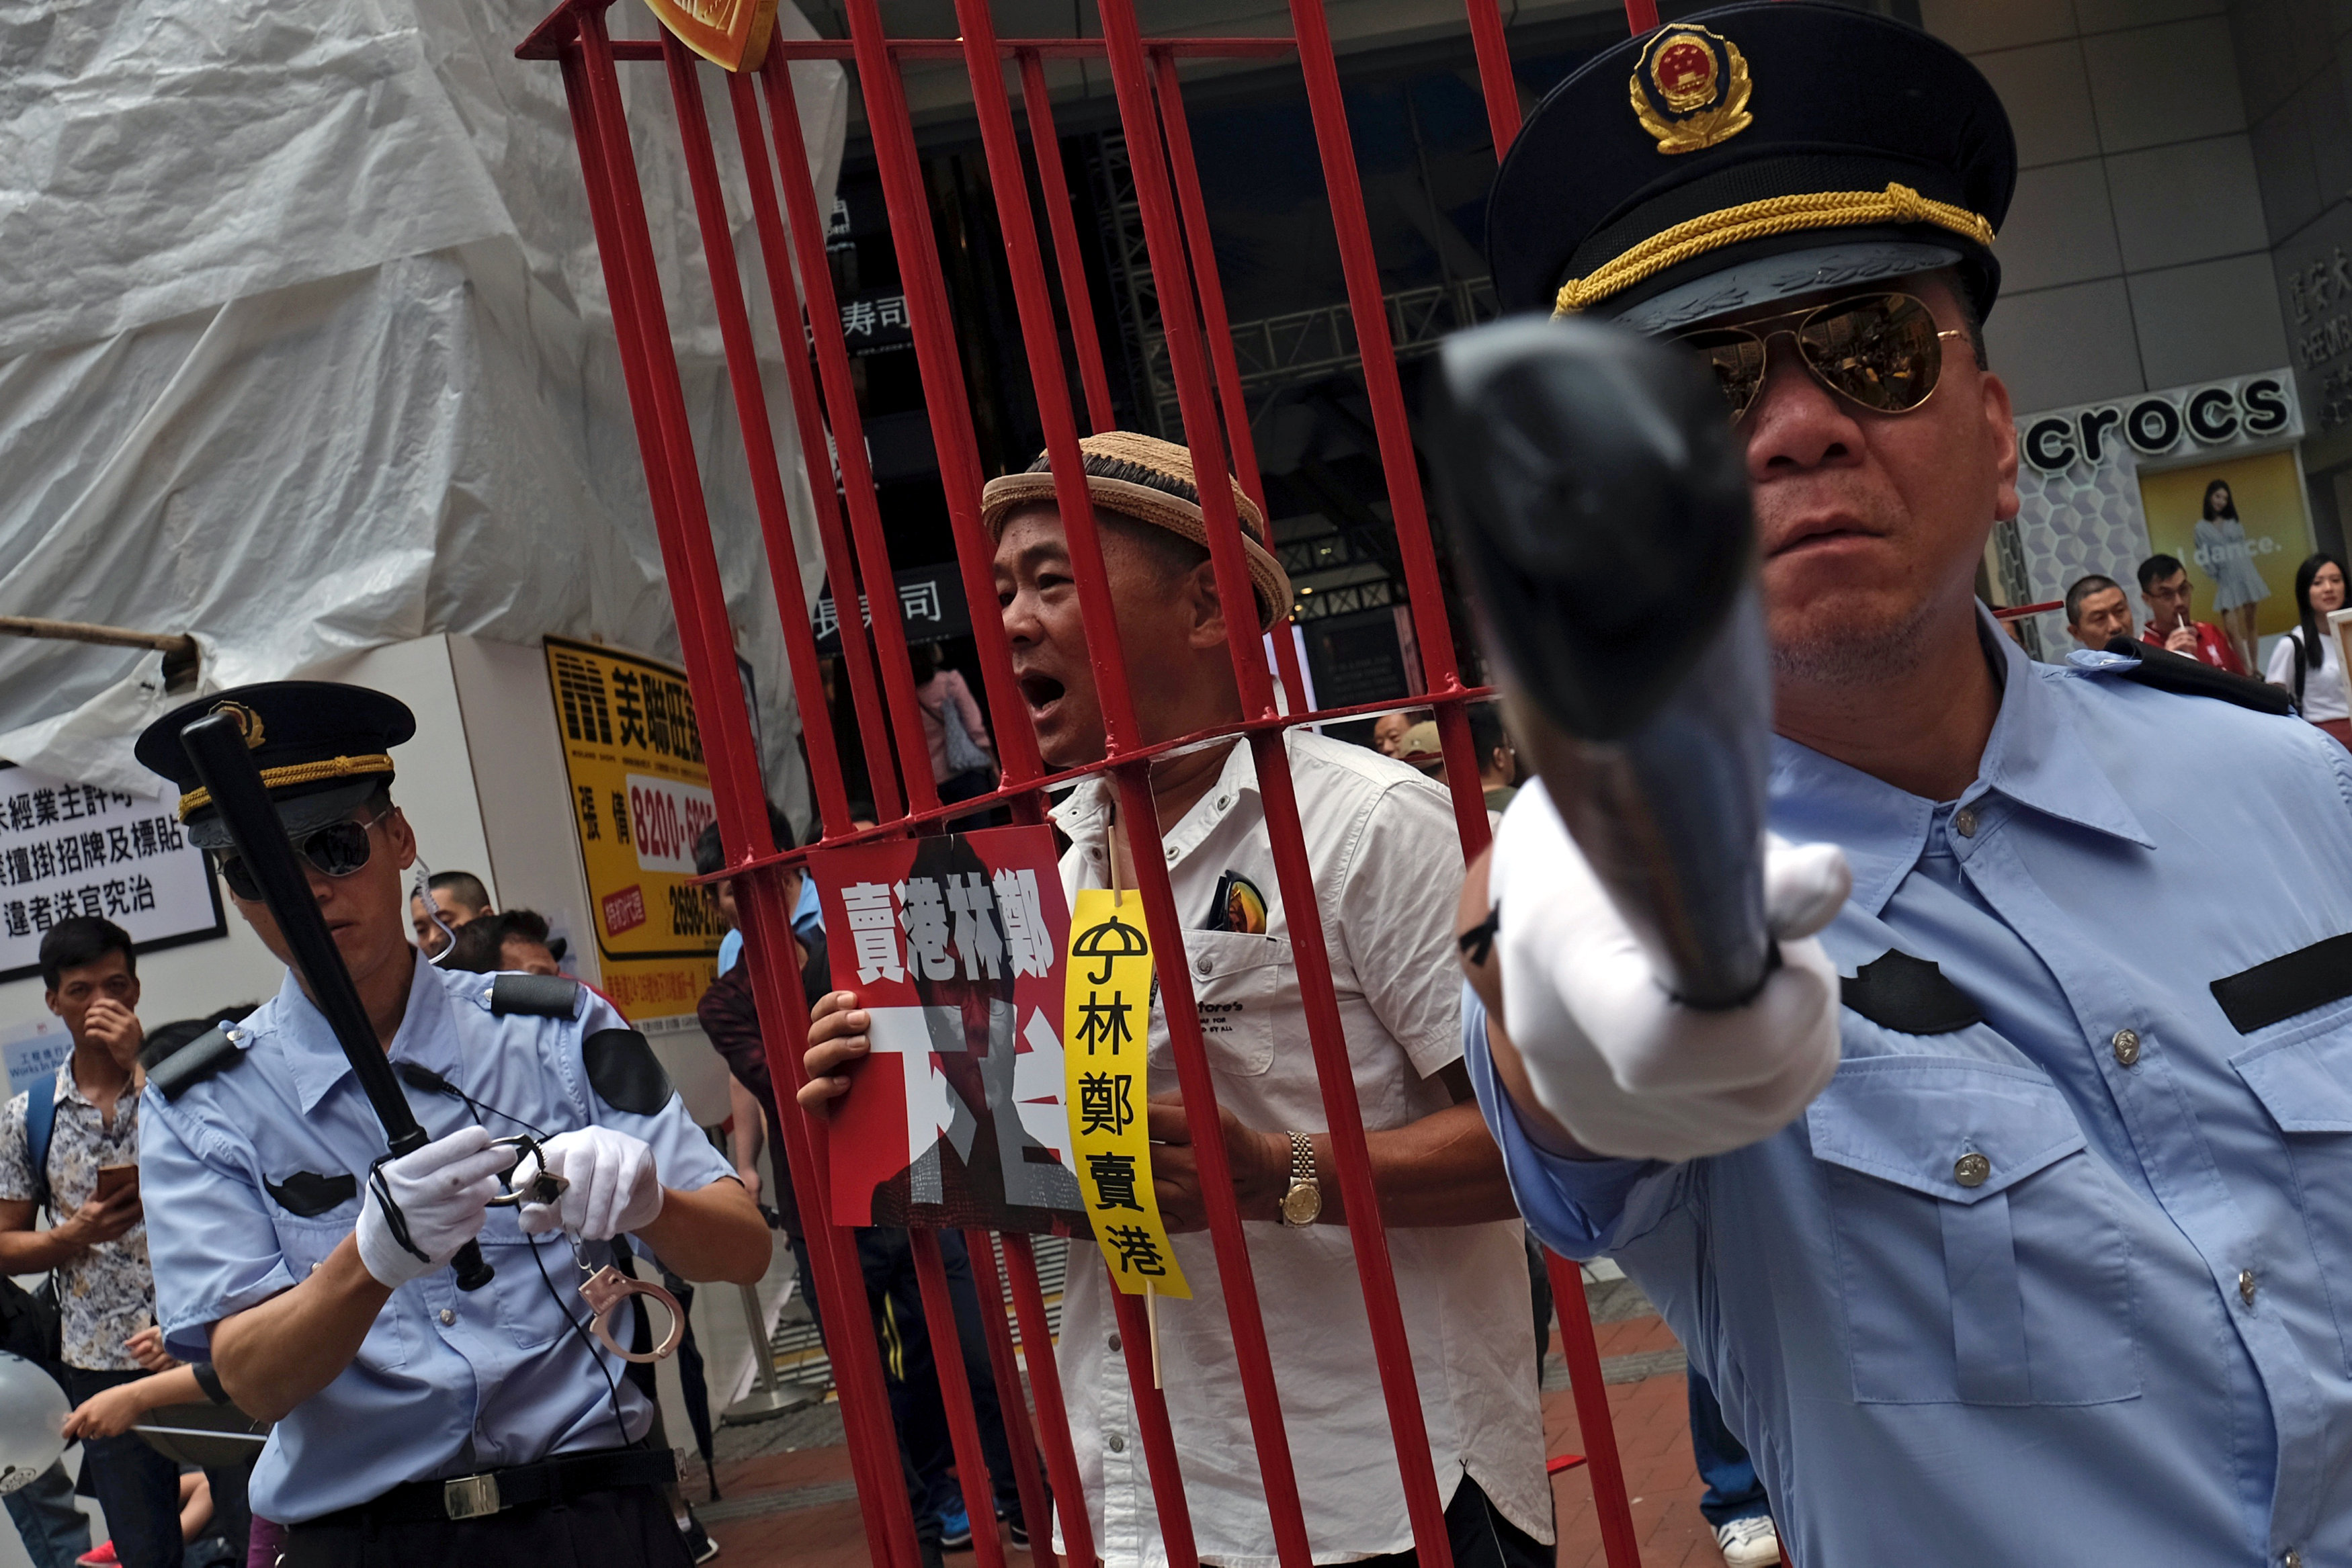 示威者扮演被公安逮捕送往中国坐牢的行动剧。-路透社-